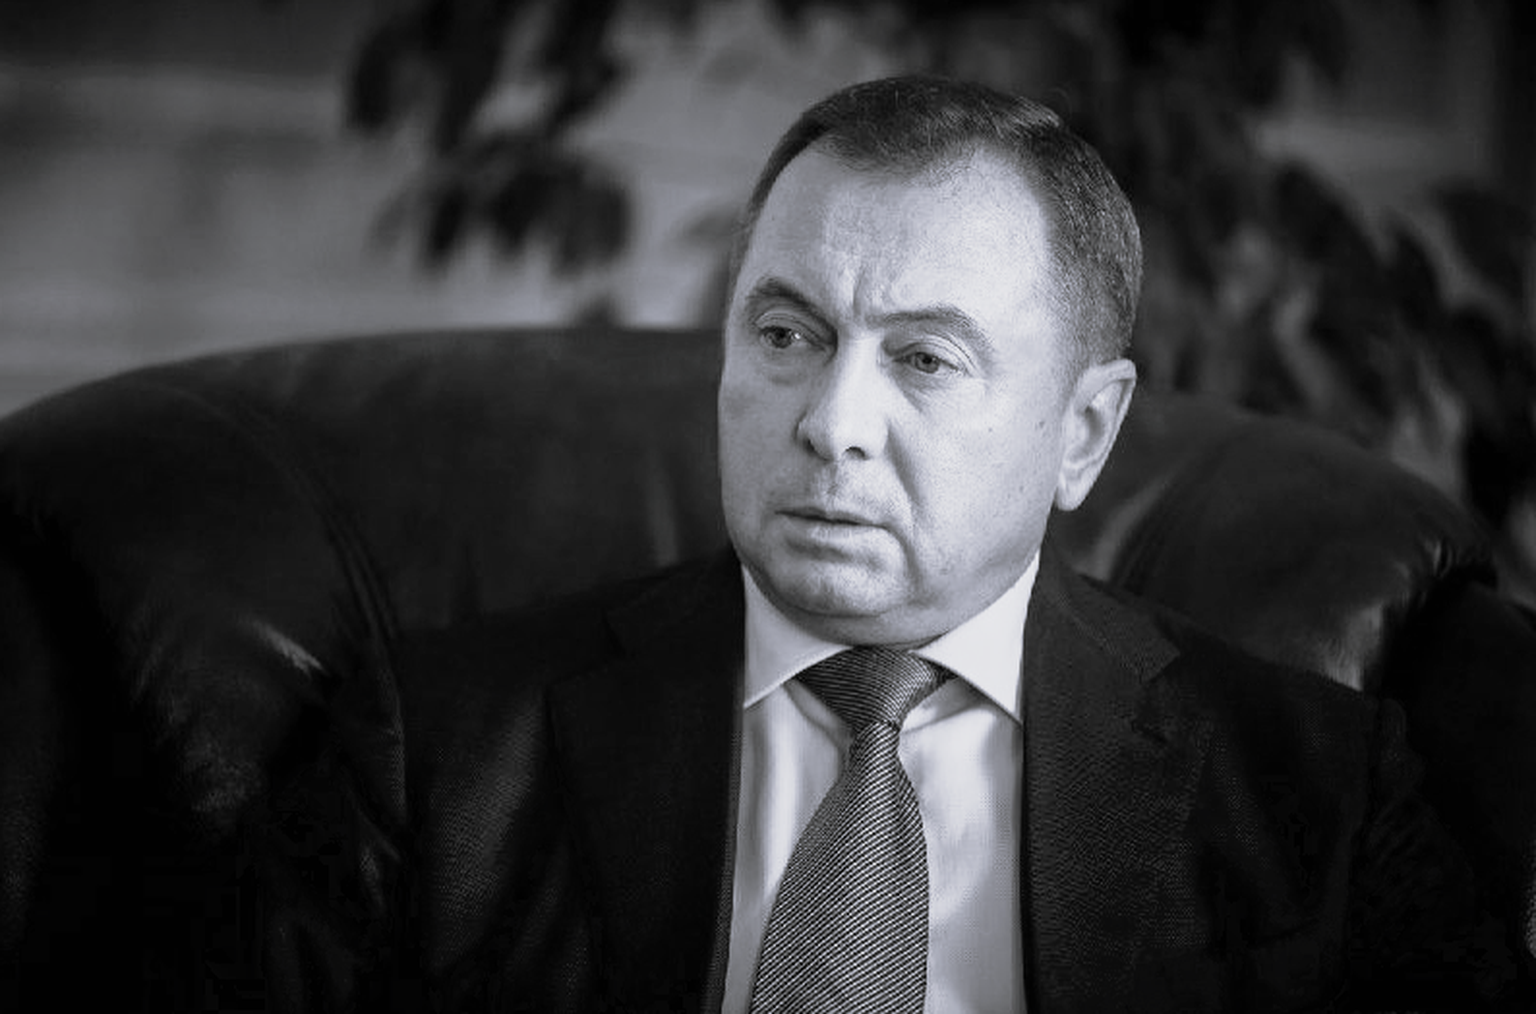 Министр иностранных дел Беларуси Владимир Макей